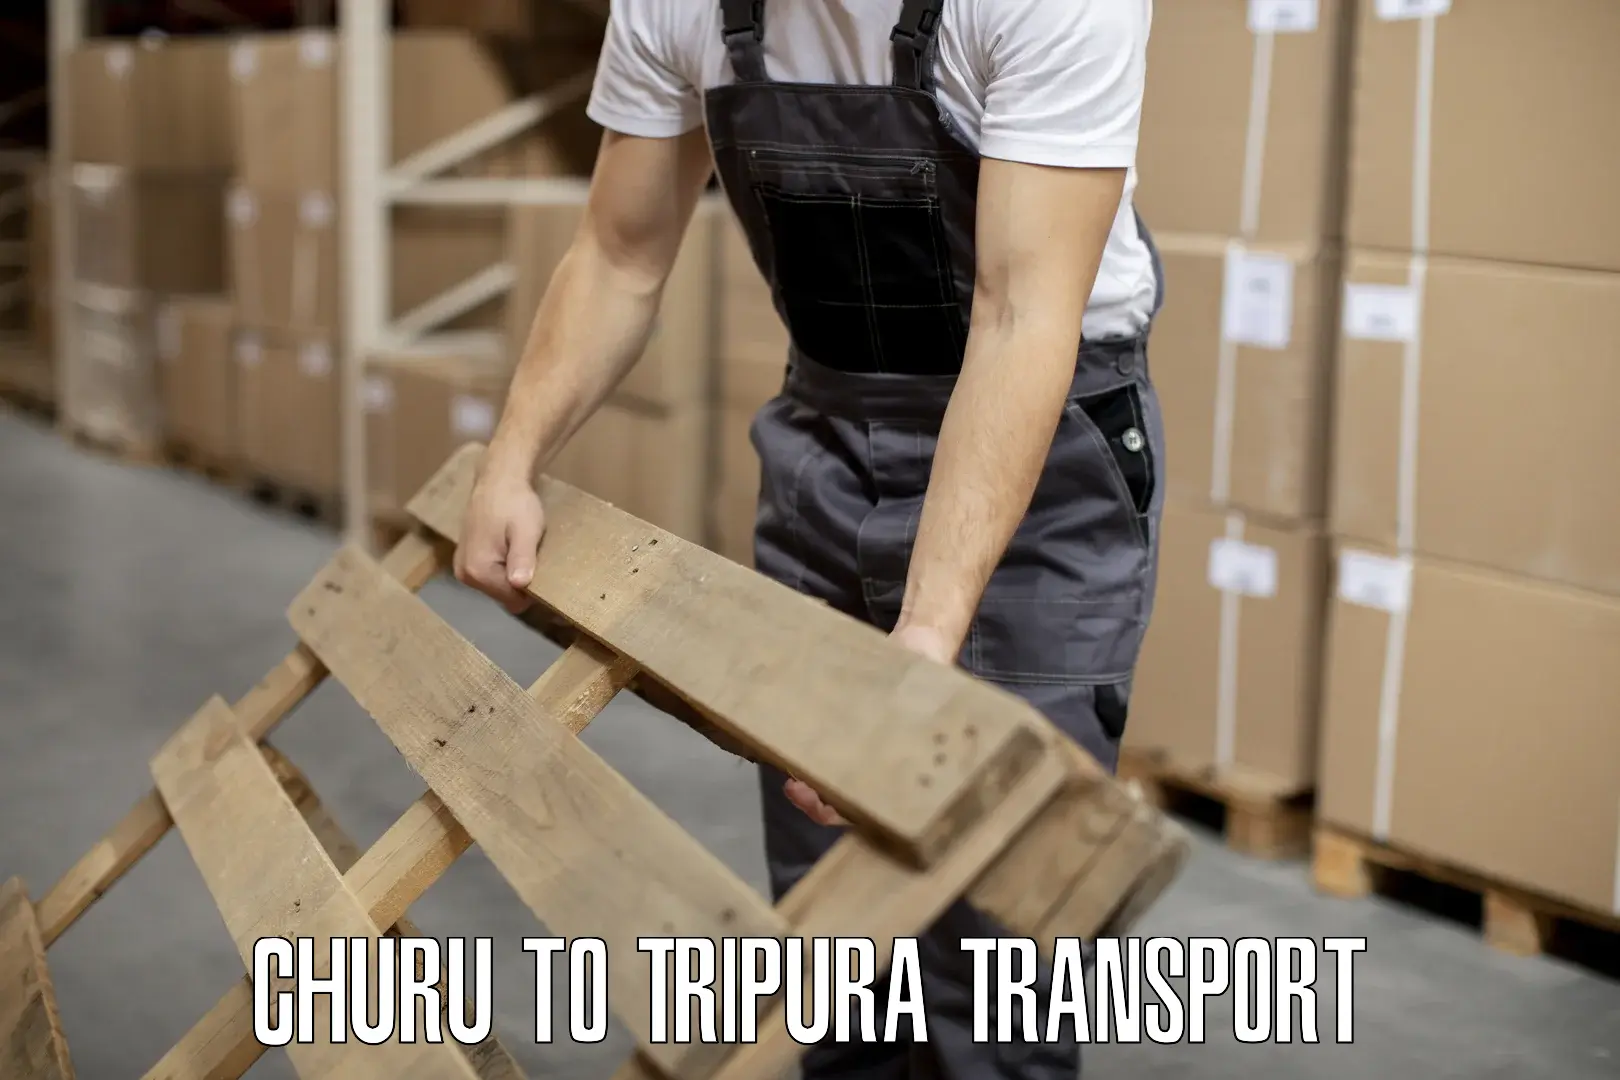 Furniture transport service Churu to Tripura